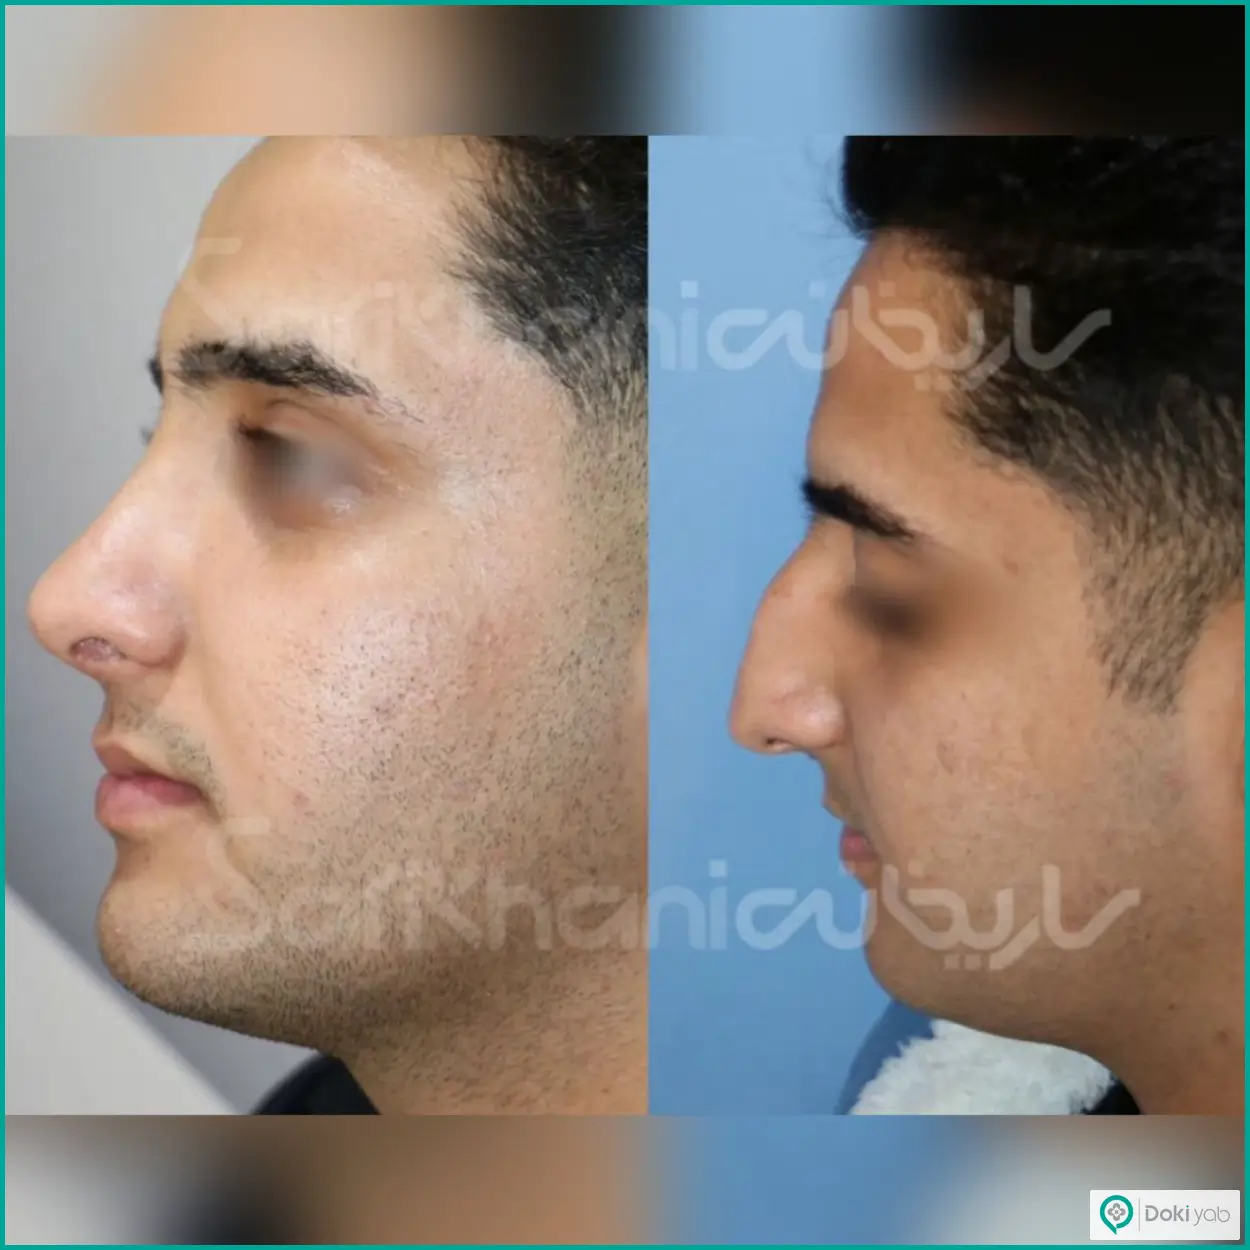 عکس قبل و بعد عمل بینی استخوانی به سبک طبیعی دکتر داریوش ساریخانی جراح بینی در شیراز